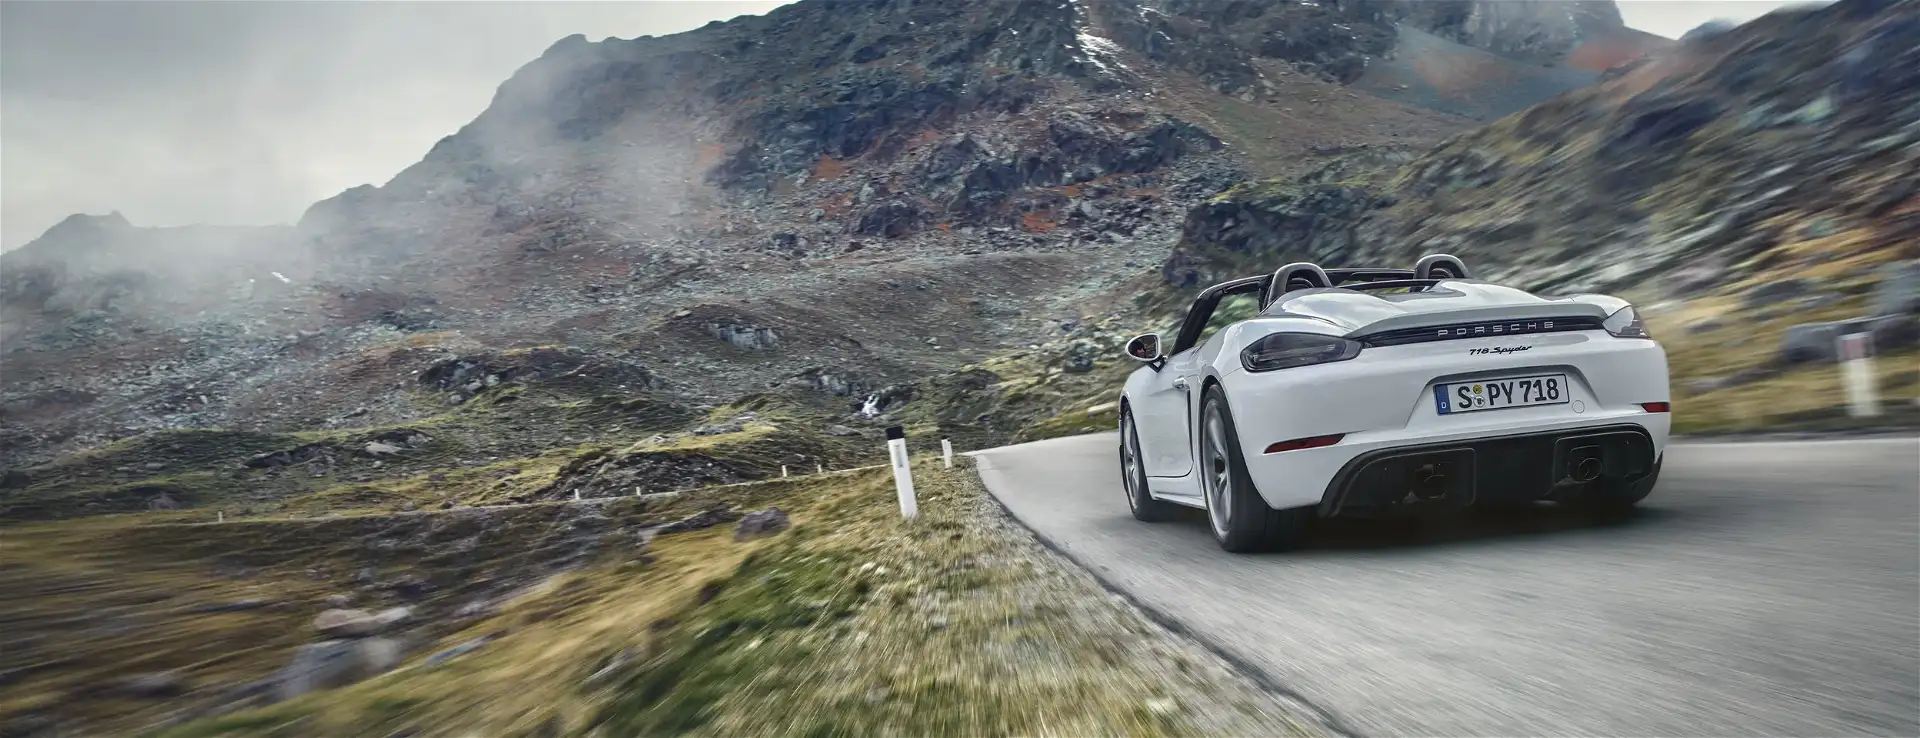 Porsche - 718 Spyder modelini ayrıntılarıyla keşfedin. 